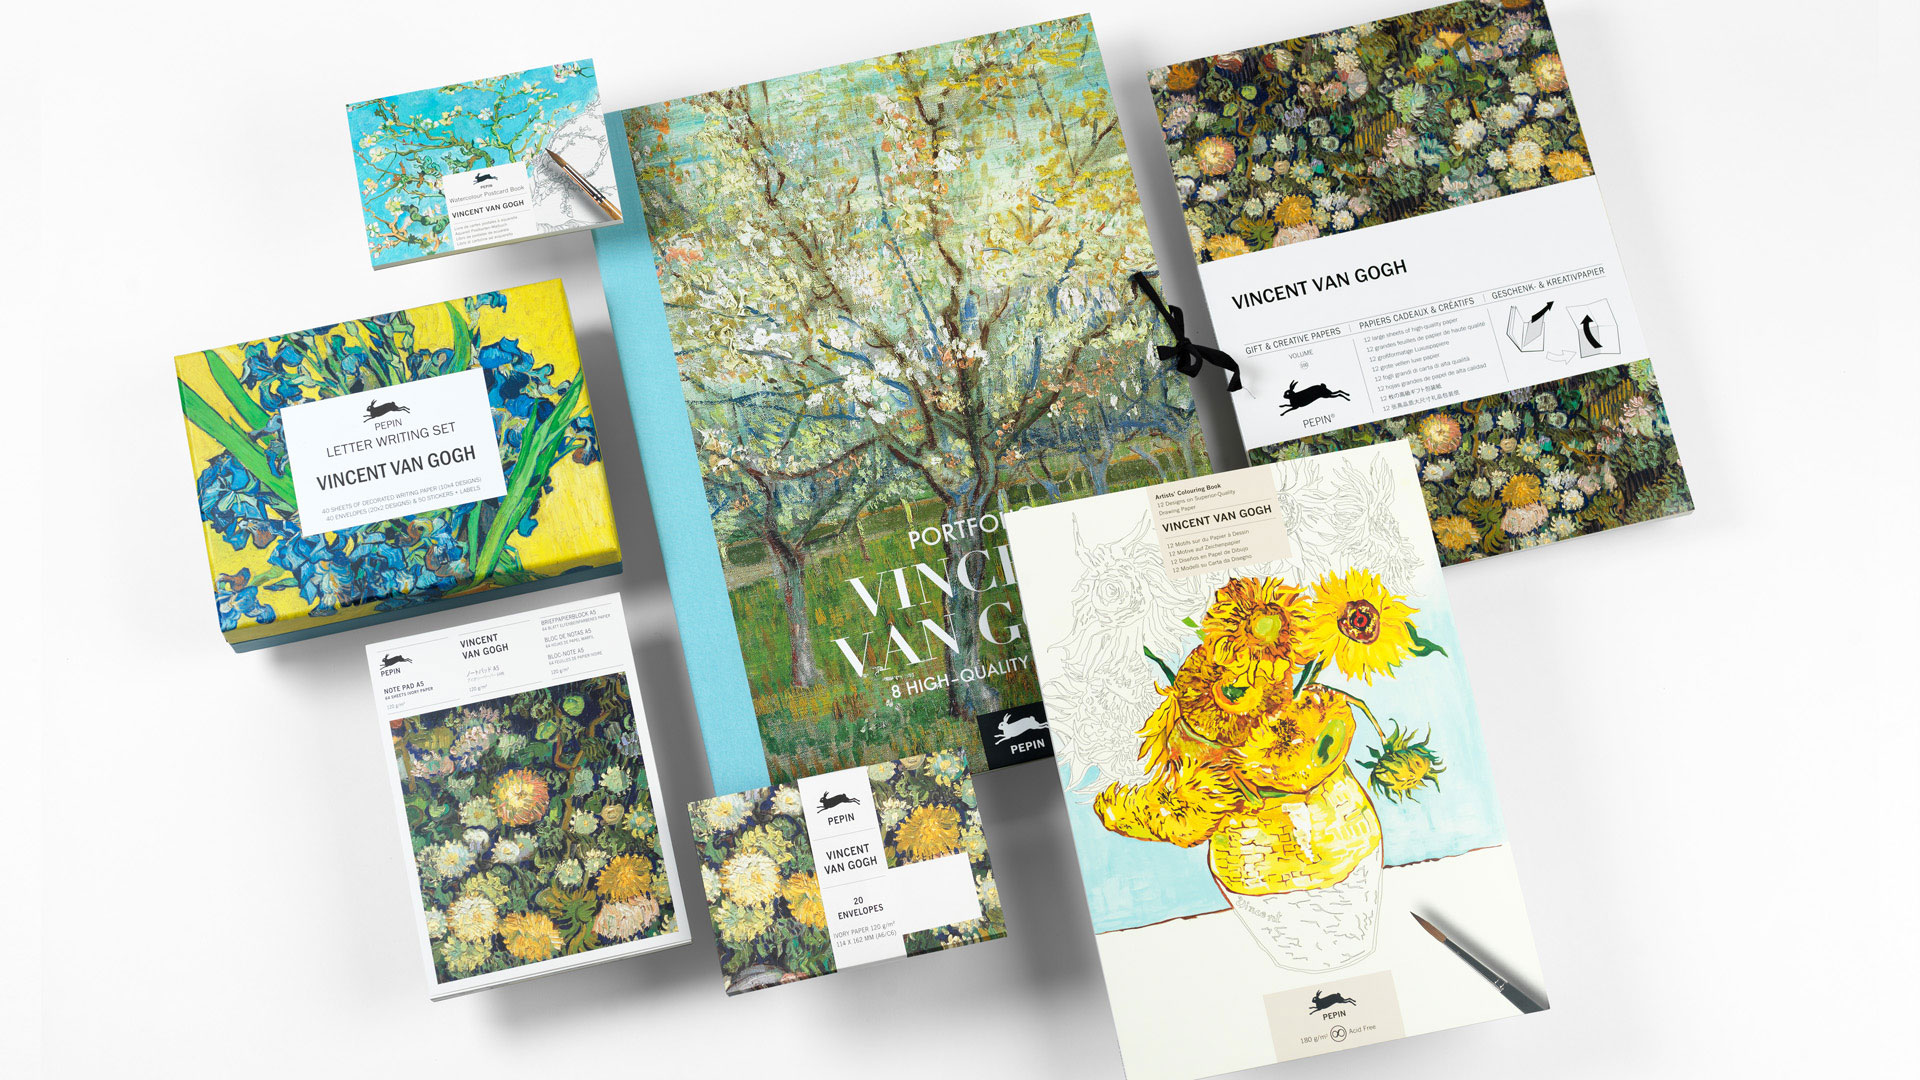 Pepin_Press_Vincent_van_Gogh_cover_01_s